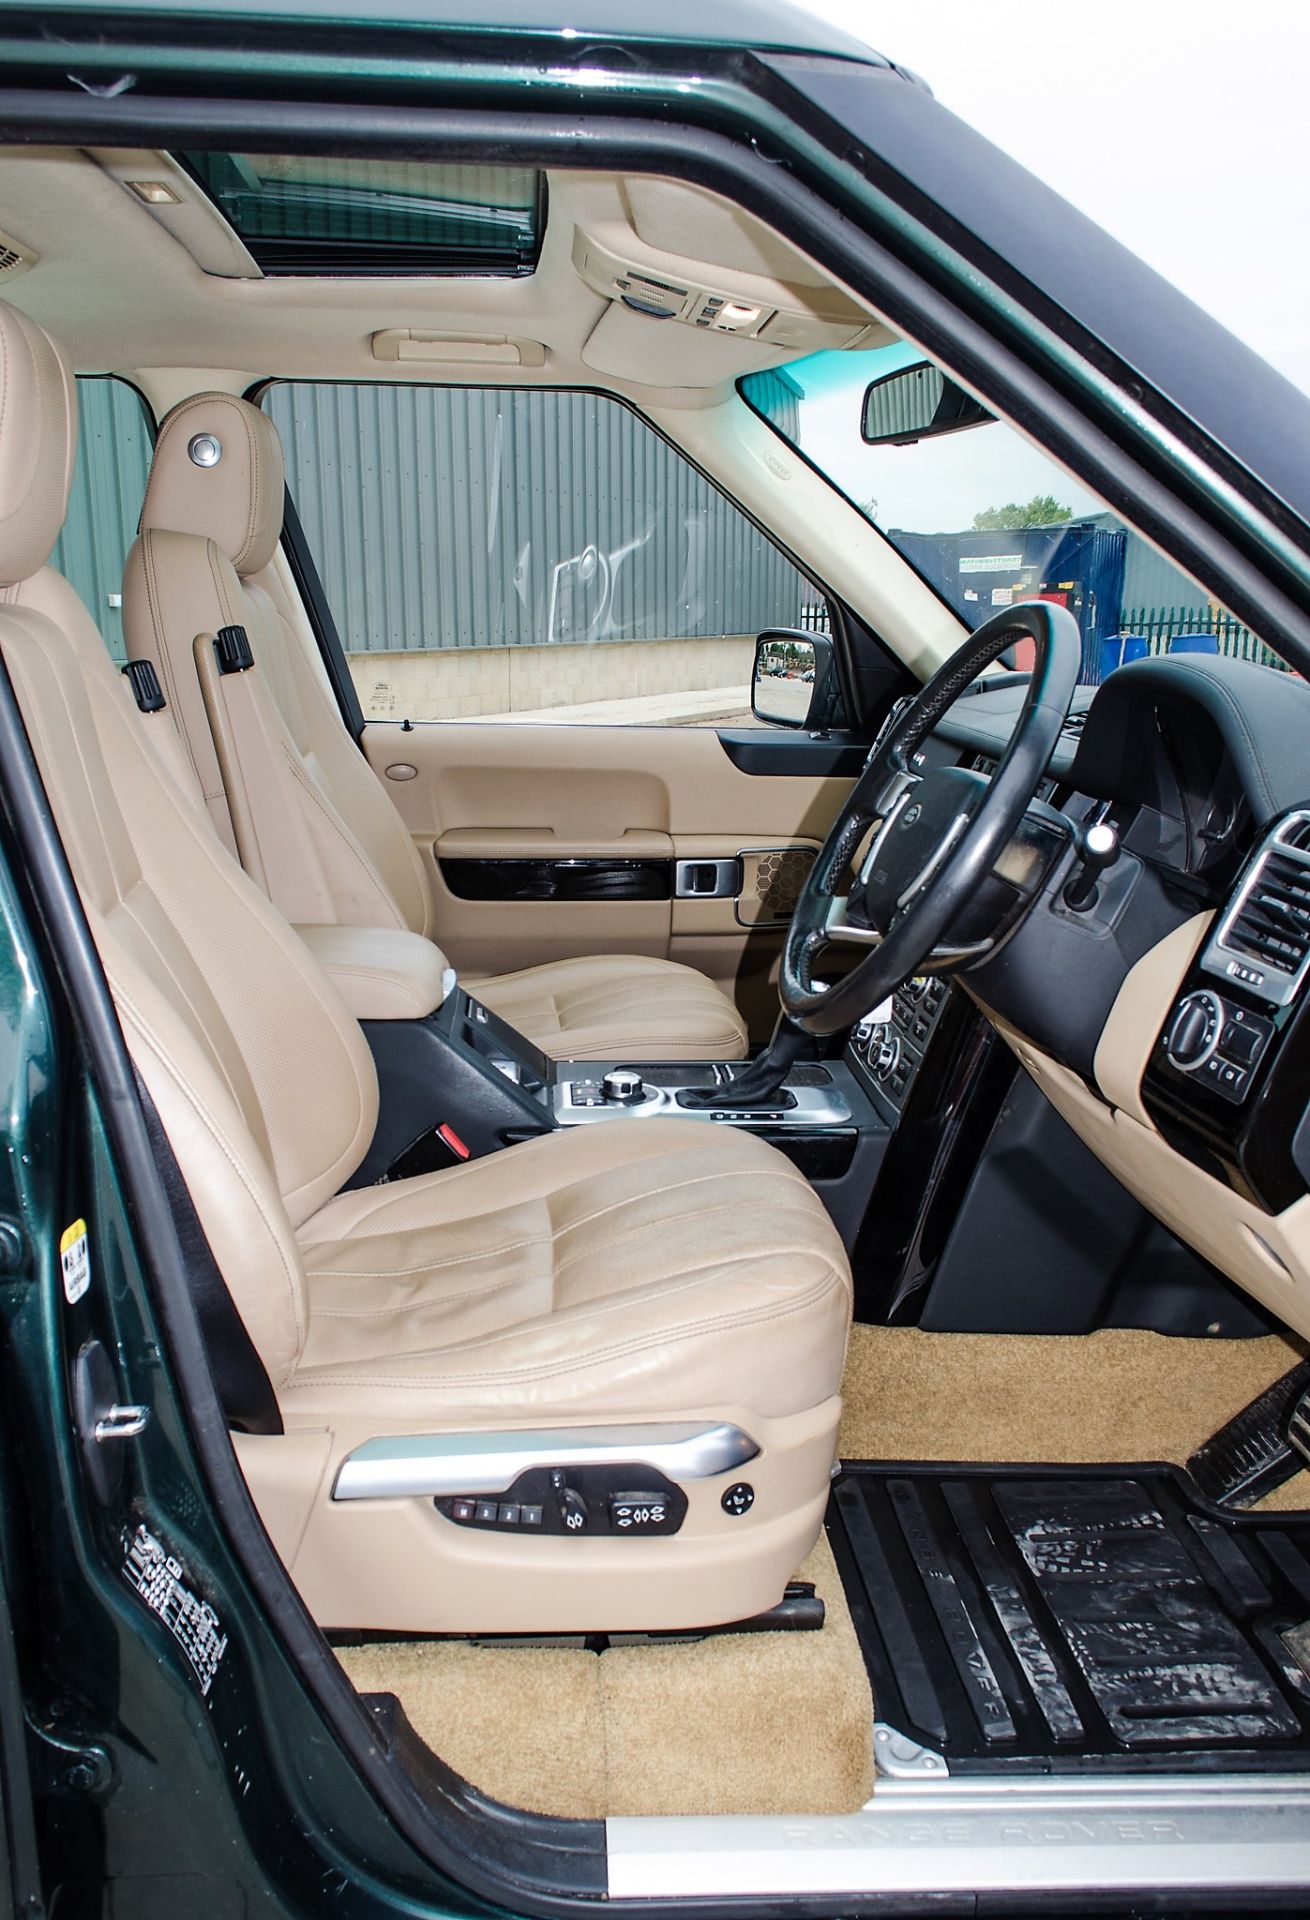 Range Rover Vogue SE TDV8 3.6 diesel 5 door 4wd estate car Registration Number: AJ09 BXU Date of - Image 18 of 33